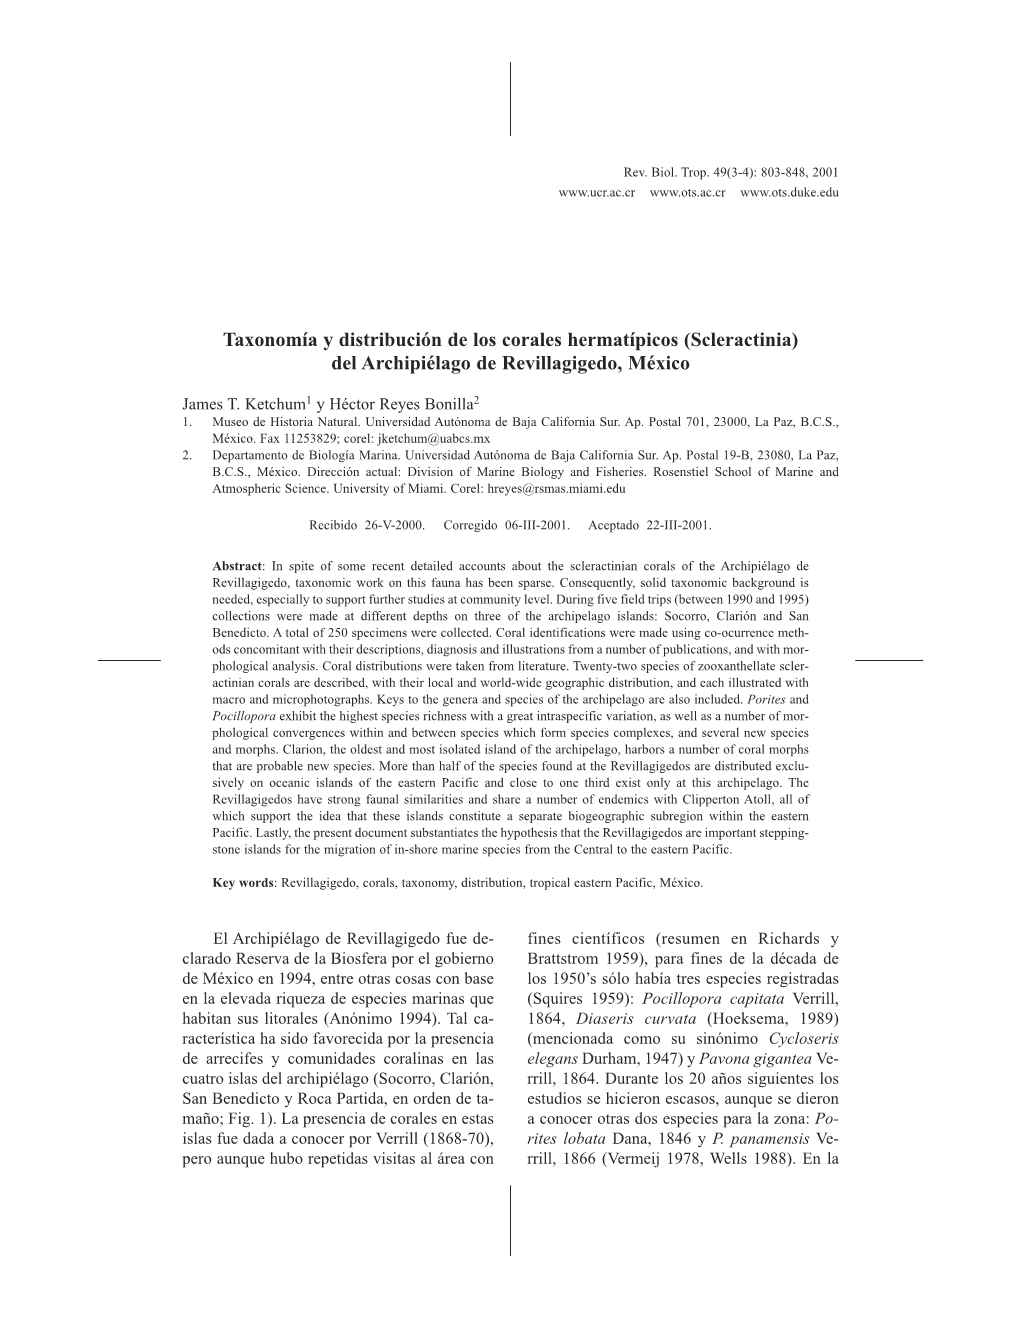 Taxonomía Y Distribución De Los Corales Hermatípicos (Scleractinia) Del Archipiélago De Revillagigedo, México